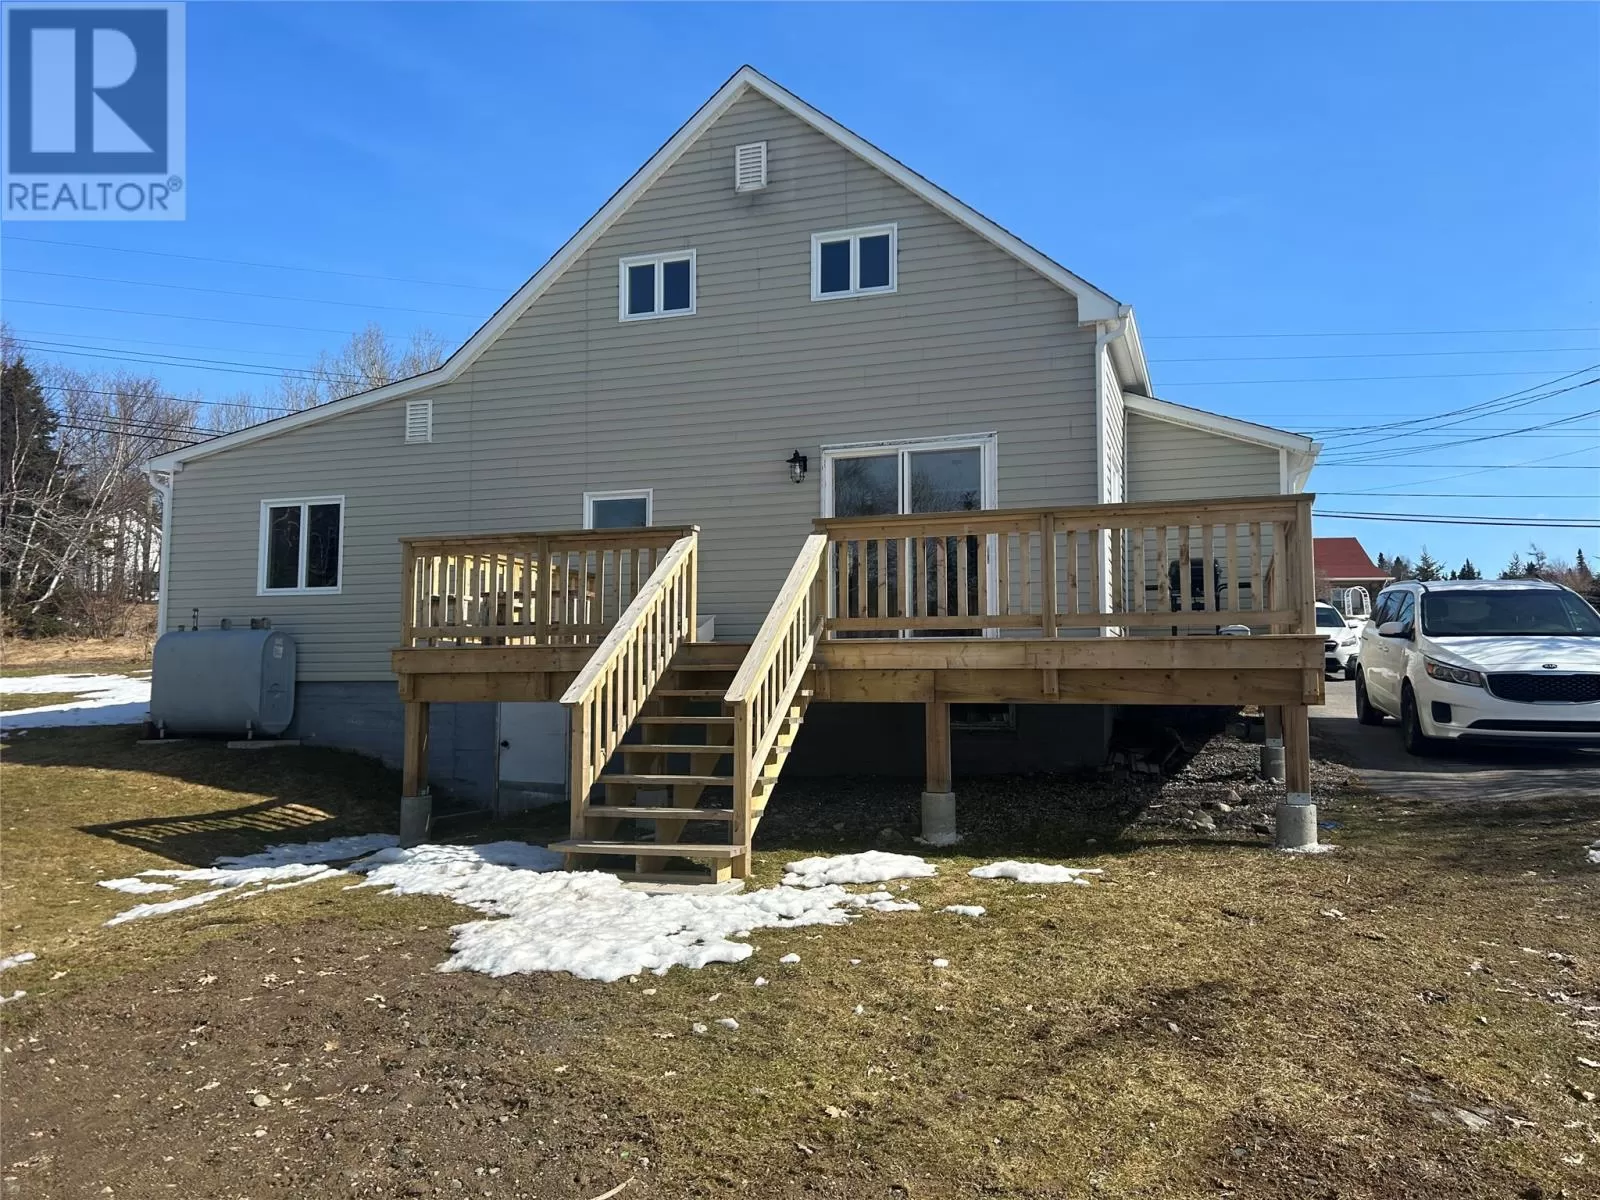 House for rent: 790 Random Island Road, Elliott's Cove, Newfoundland & Labrador A5A 3A1